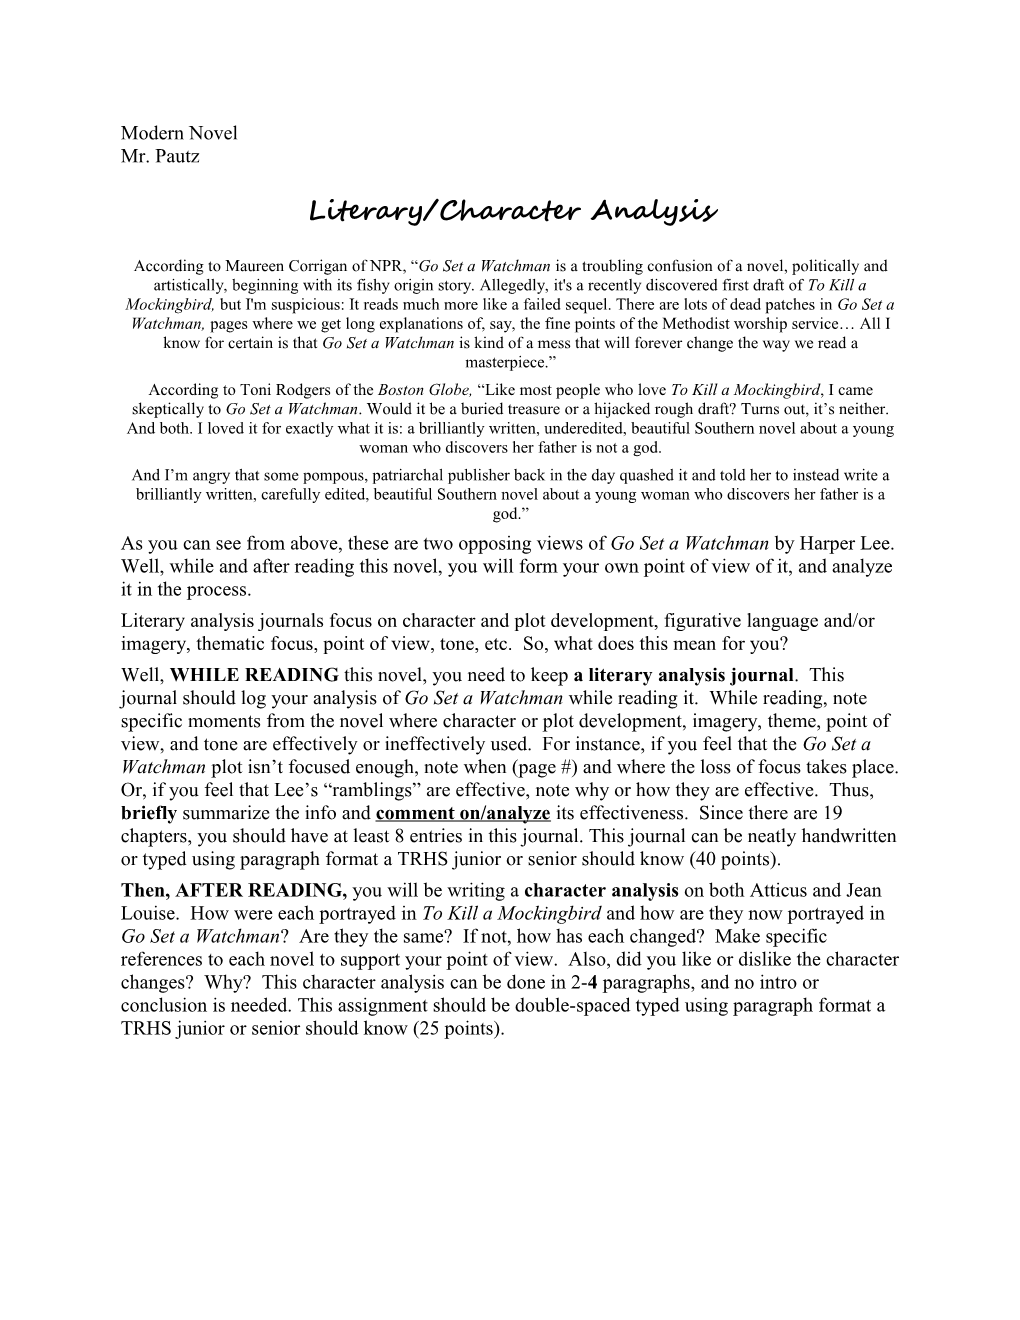 Literary/Character Analysis